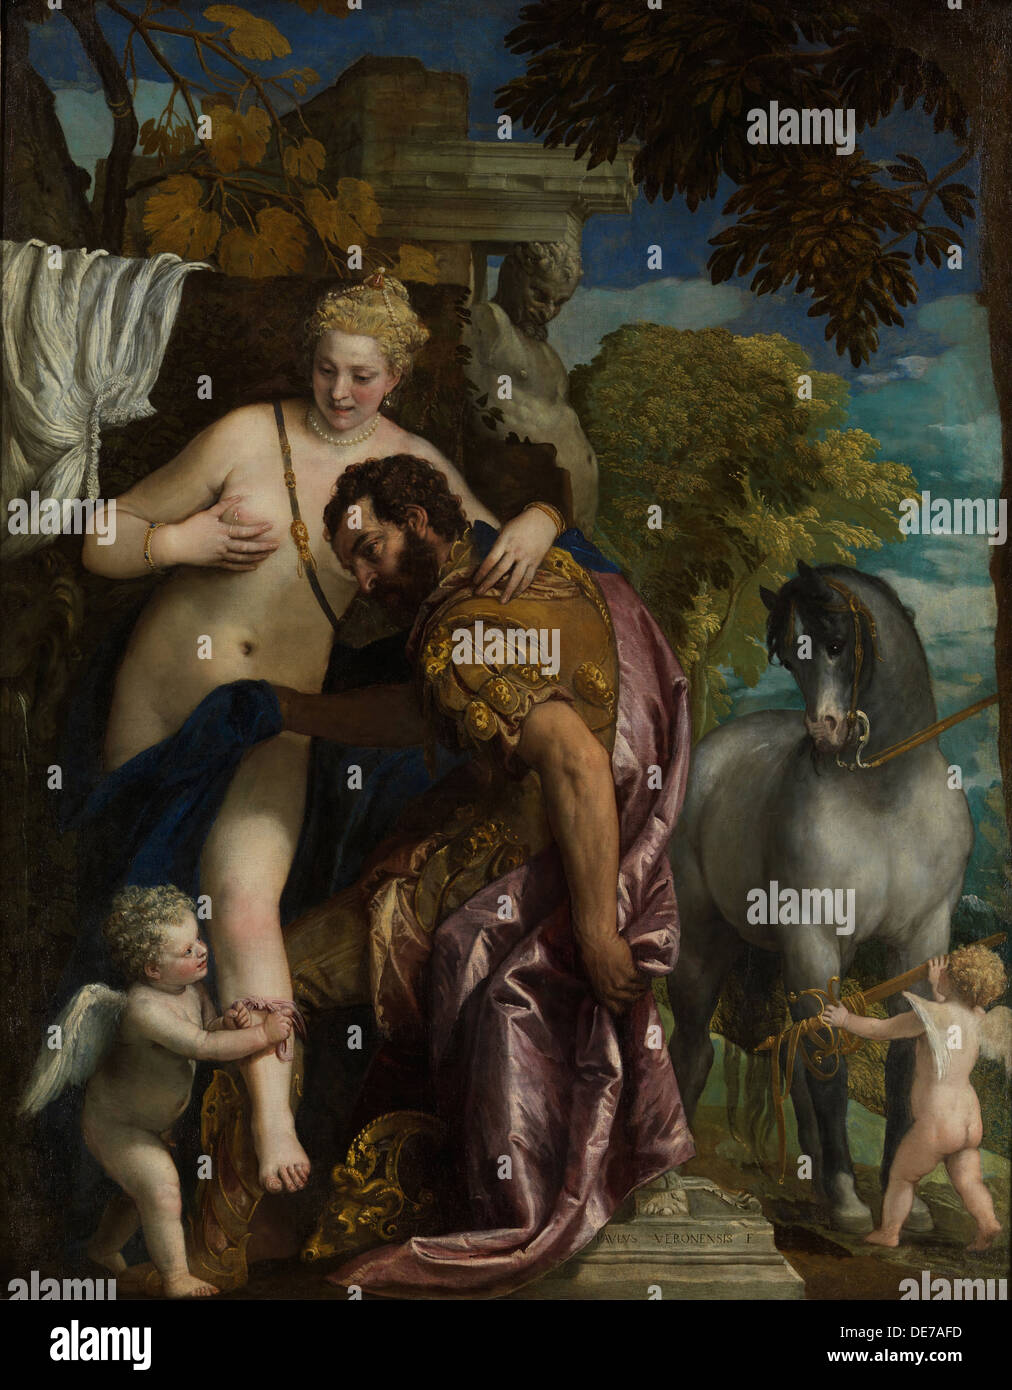 Marte y Venus unidos por amor,1570s. Artista: Veronese, Paolo (1528-1588) Foto de stock